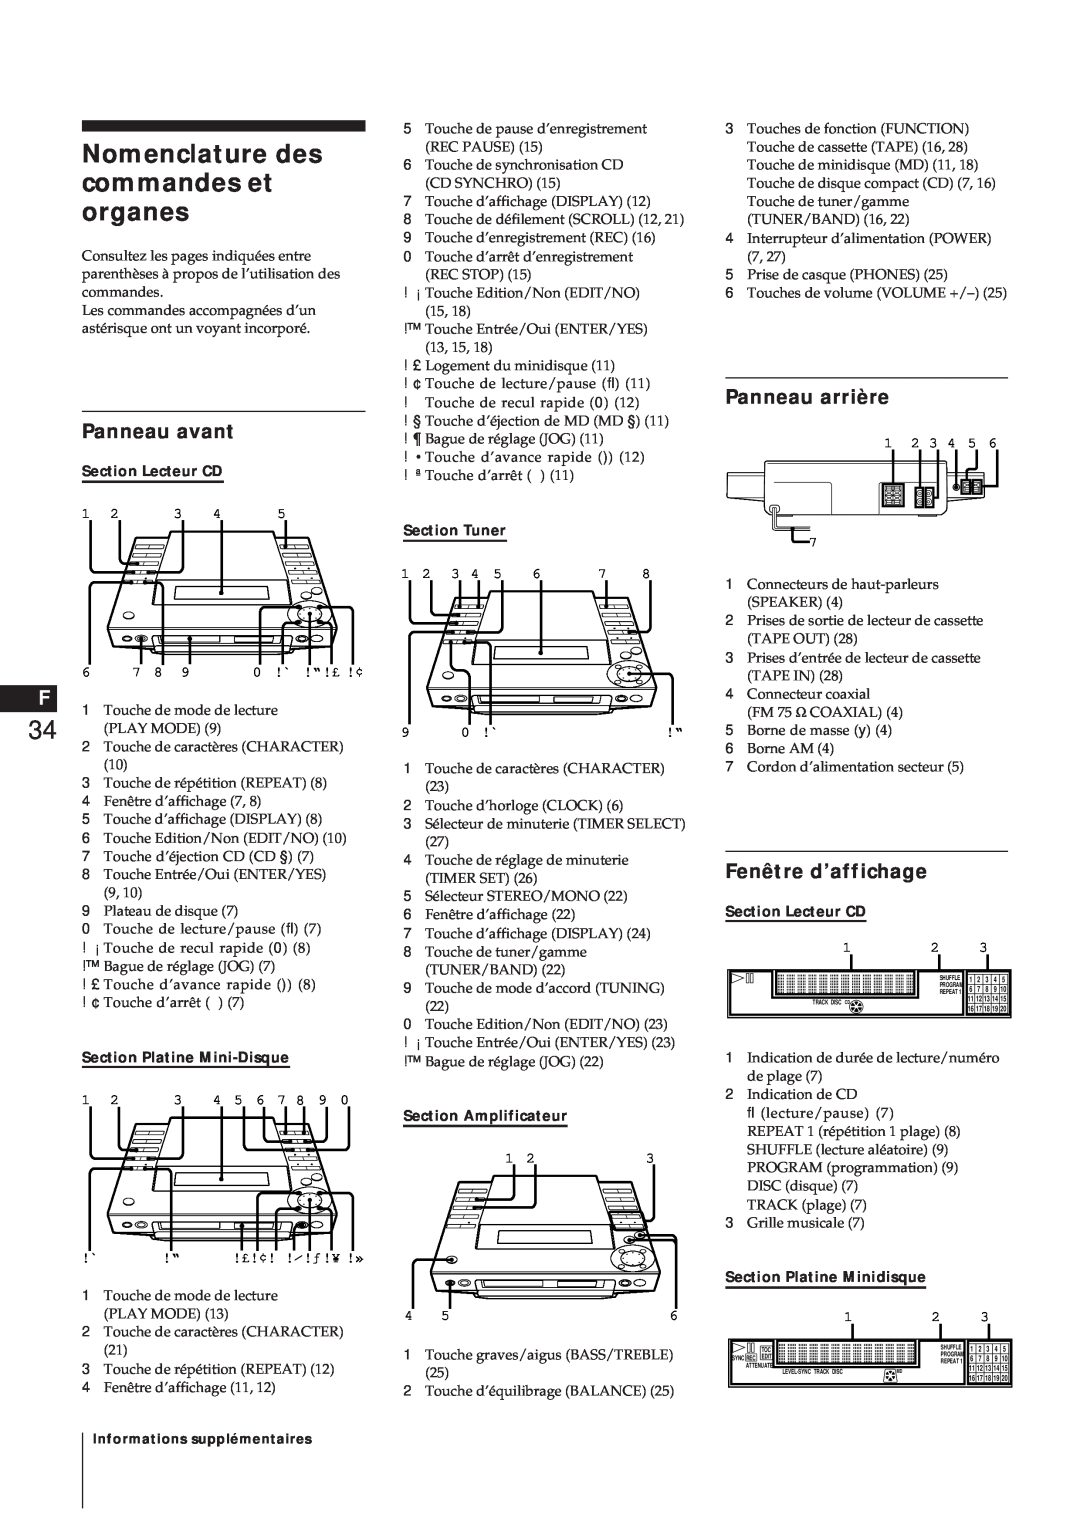 Sony MJ-L1 Nomenclature des commandes et organes, Panneau avant, Panneau arrière, Fenêtre d’affichage, Section Lecteur CD 